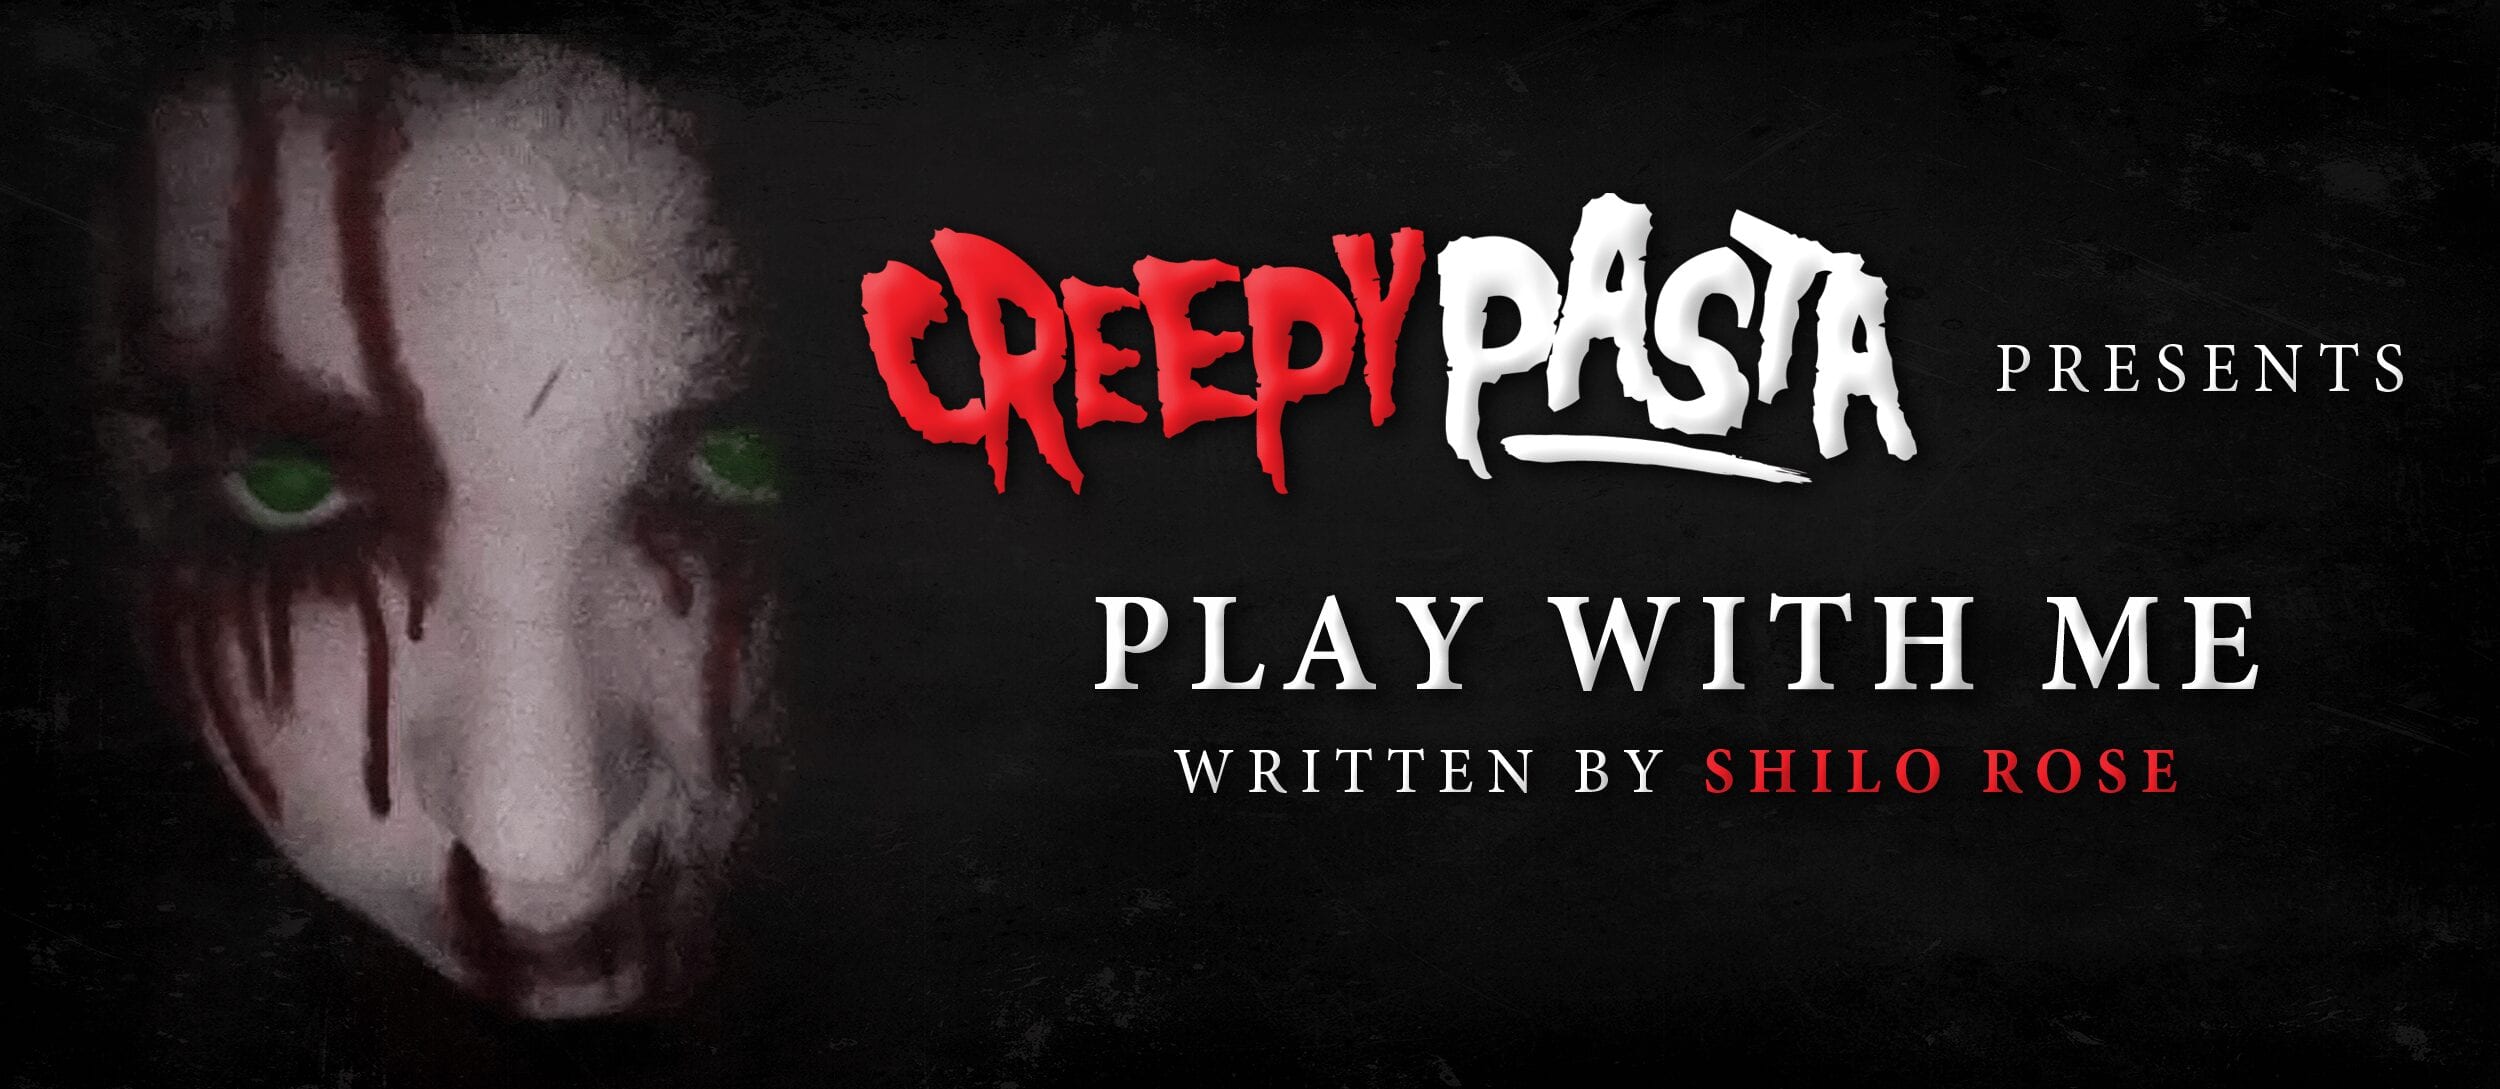 Sally Play With Me Creepypasta - roblox creepypasta life fonts